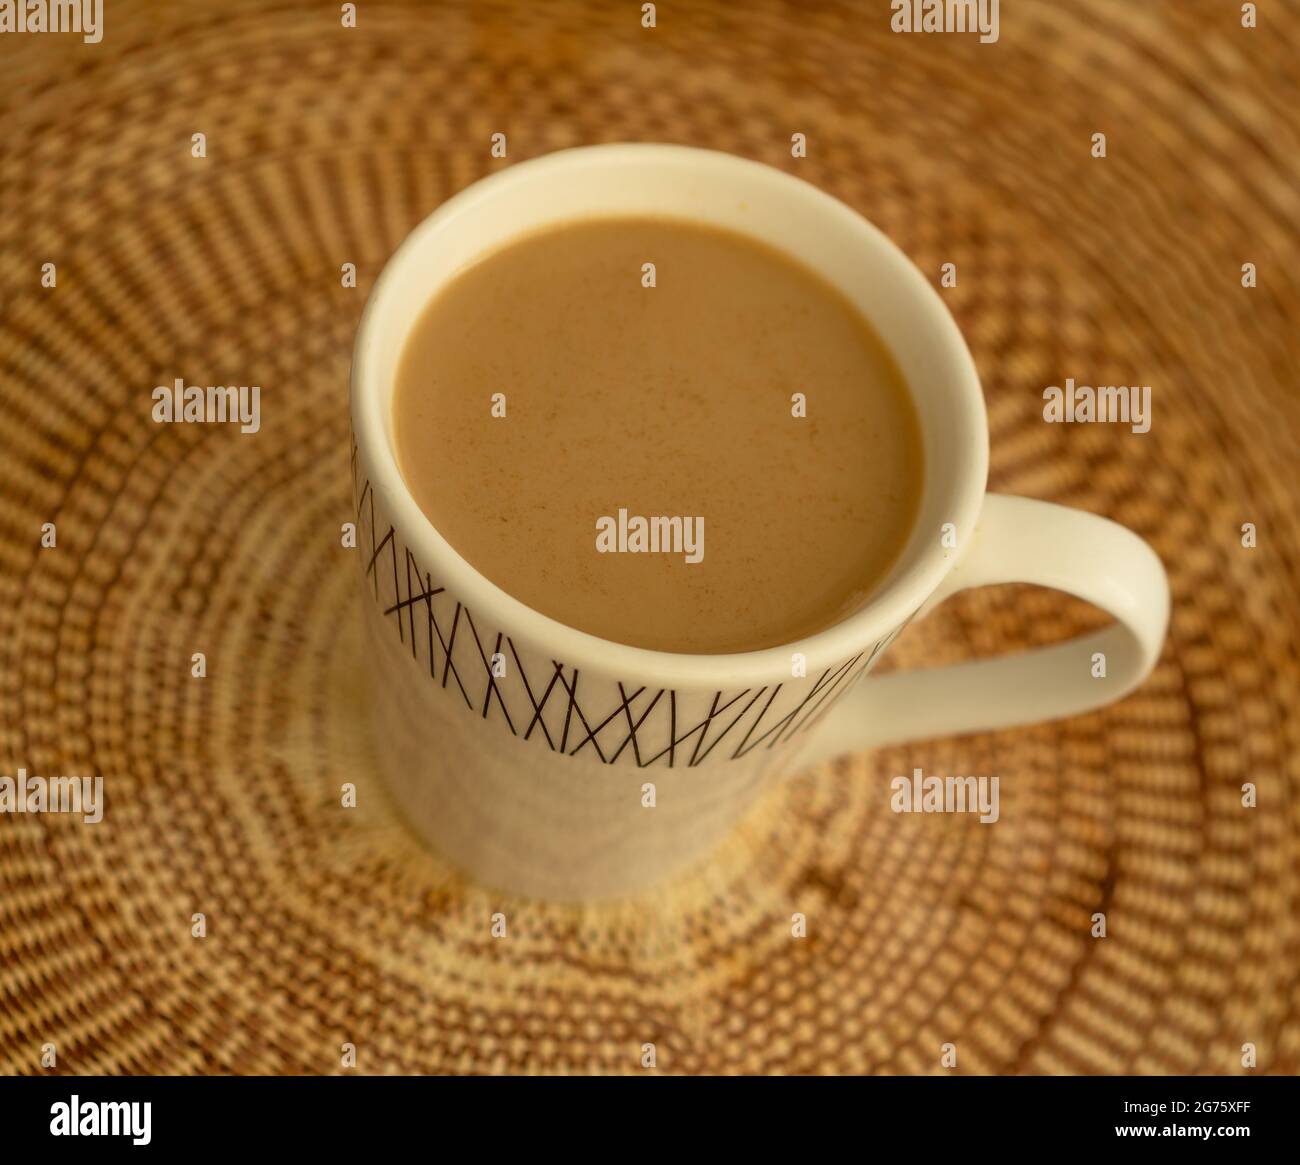 Kaffee mit Milch und Zimt in einem Becher auf einer braun gewebten Tischdecke Stockfoto